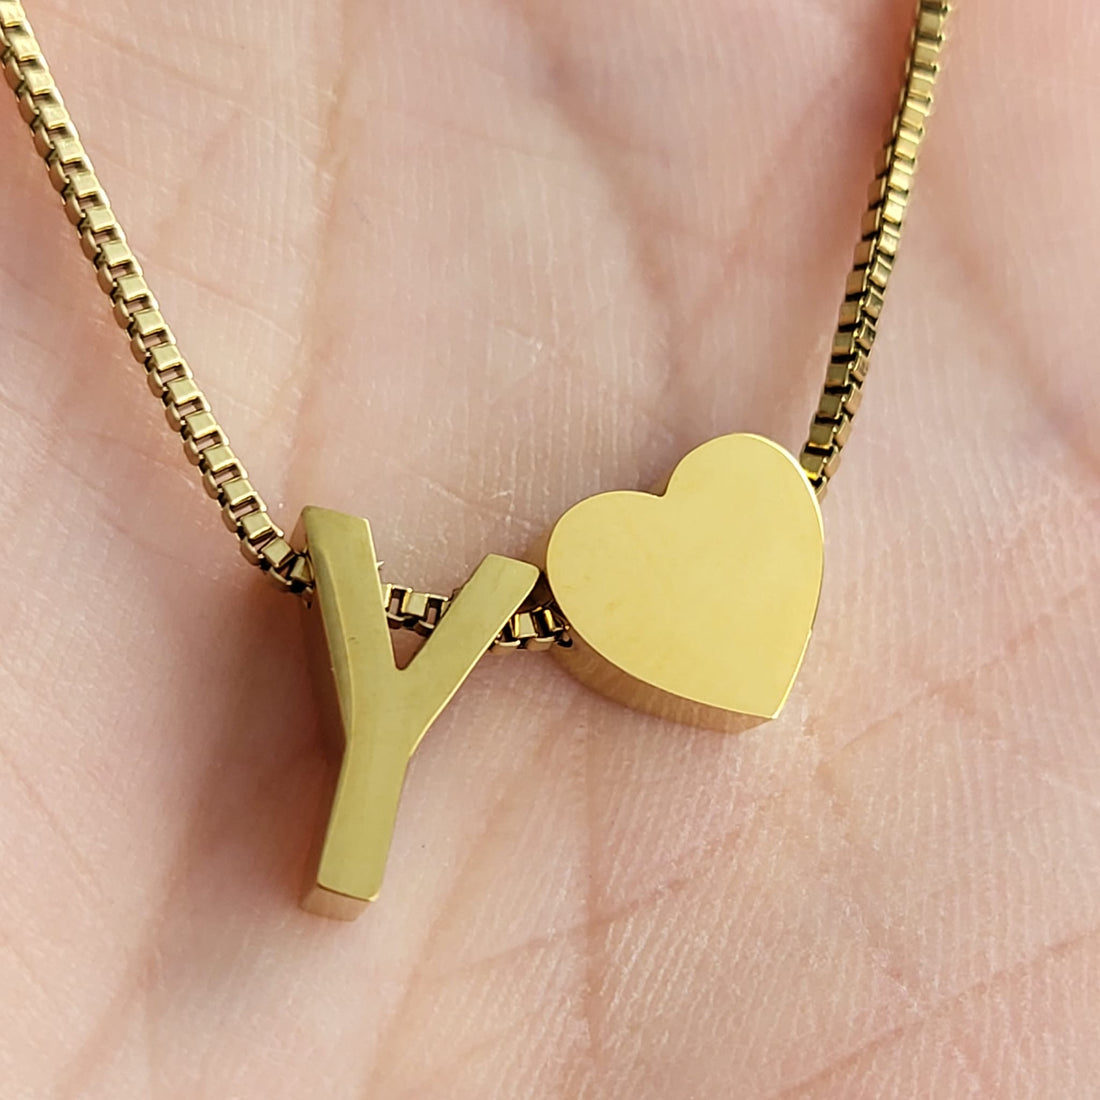 Necklace Initials Love - Y